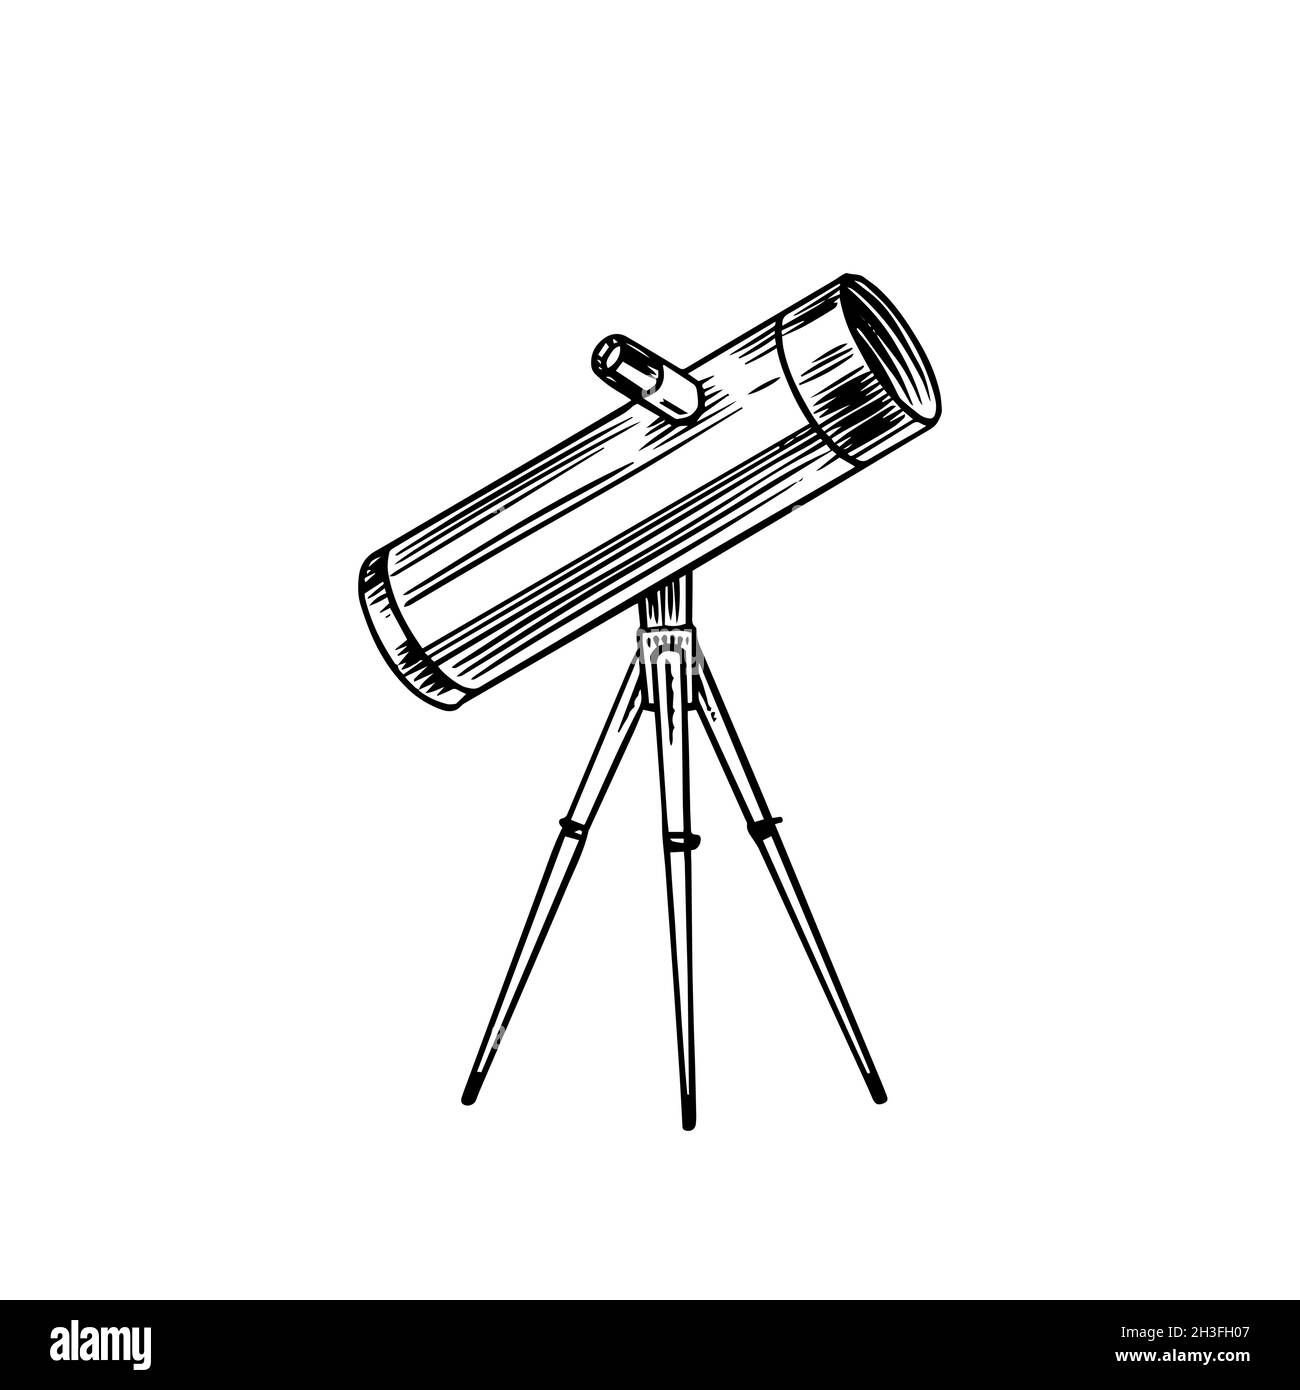 Télescope astronomique, vintage, gravé à la main dessiné en esquisse ou en bois de style coupé, ancien instrument scientifique rétro pour explorer et Illustration de Vecteur